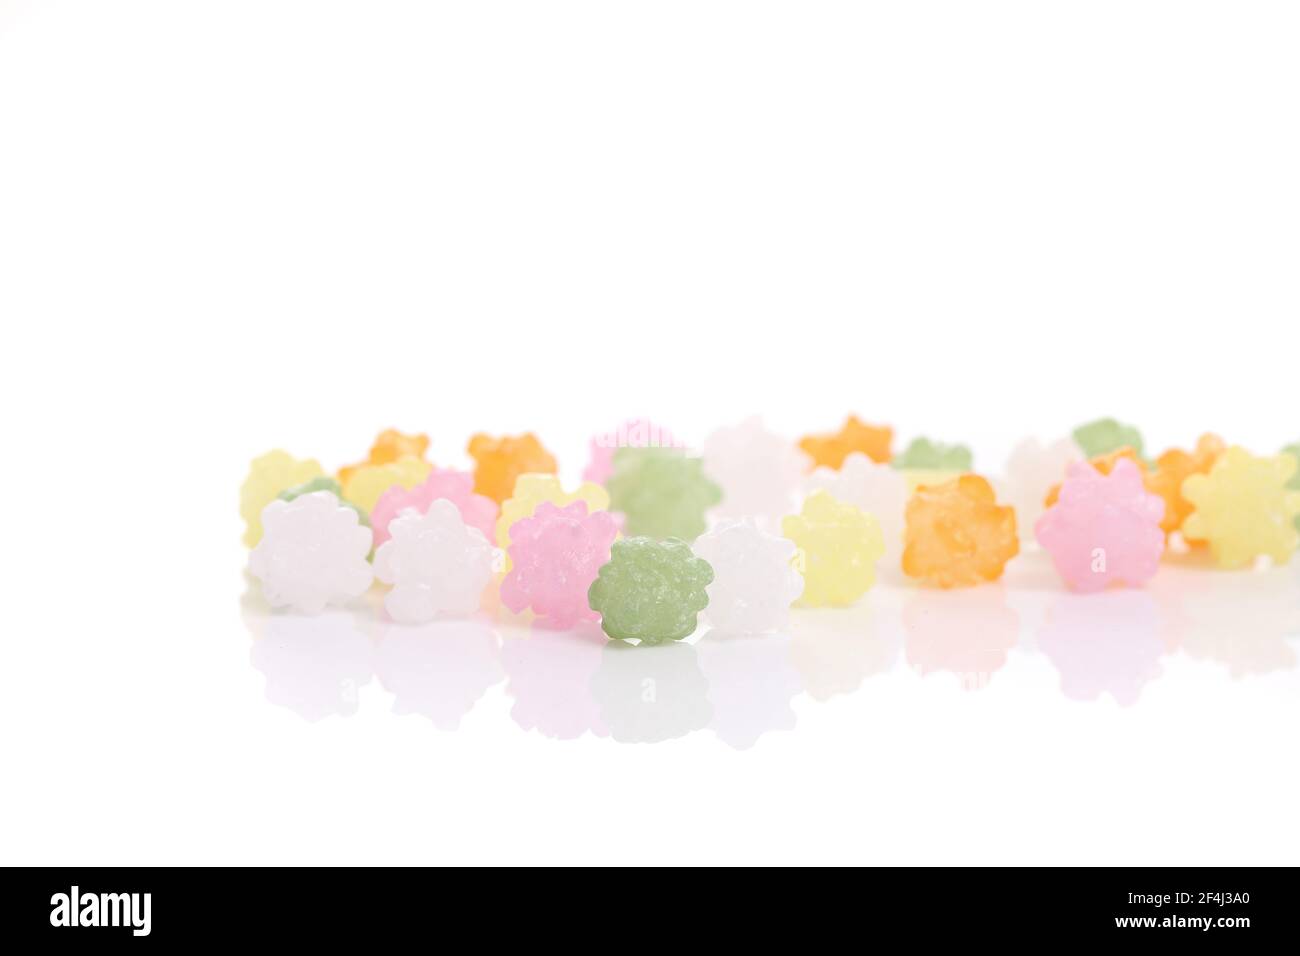 Zucchero dolce caramellato di gelatina colorato isolato su sfondo bianco Foto Stock